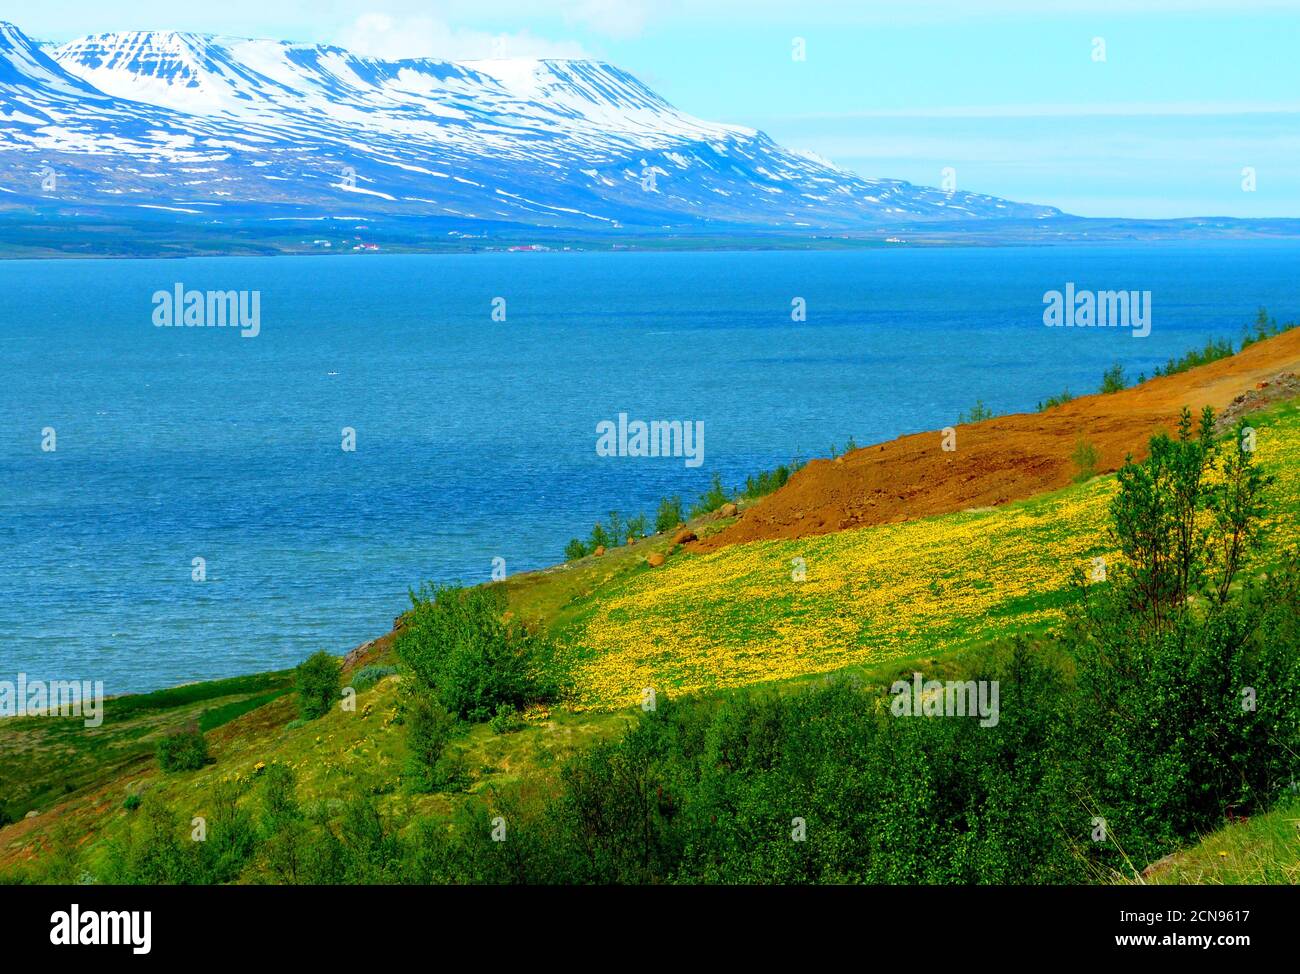 Paysage paisible idyllique sur la rivière près d'Akureyri, Islande. Des fjords islandais impressionnants. Bel été du nord. Banque D'Images